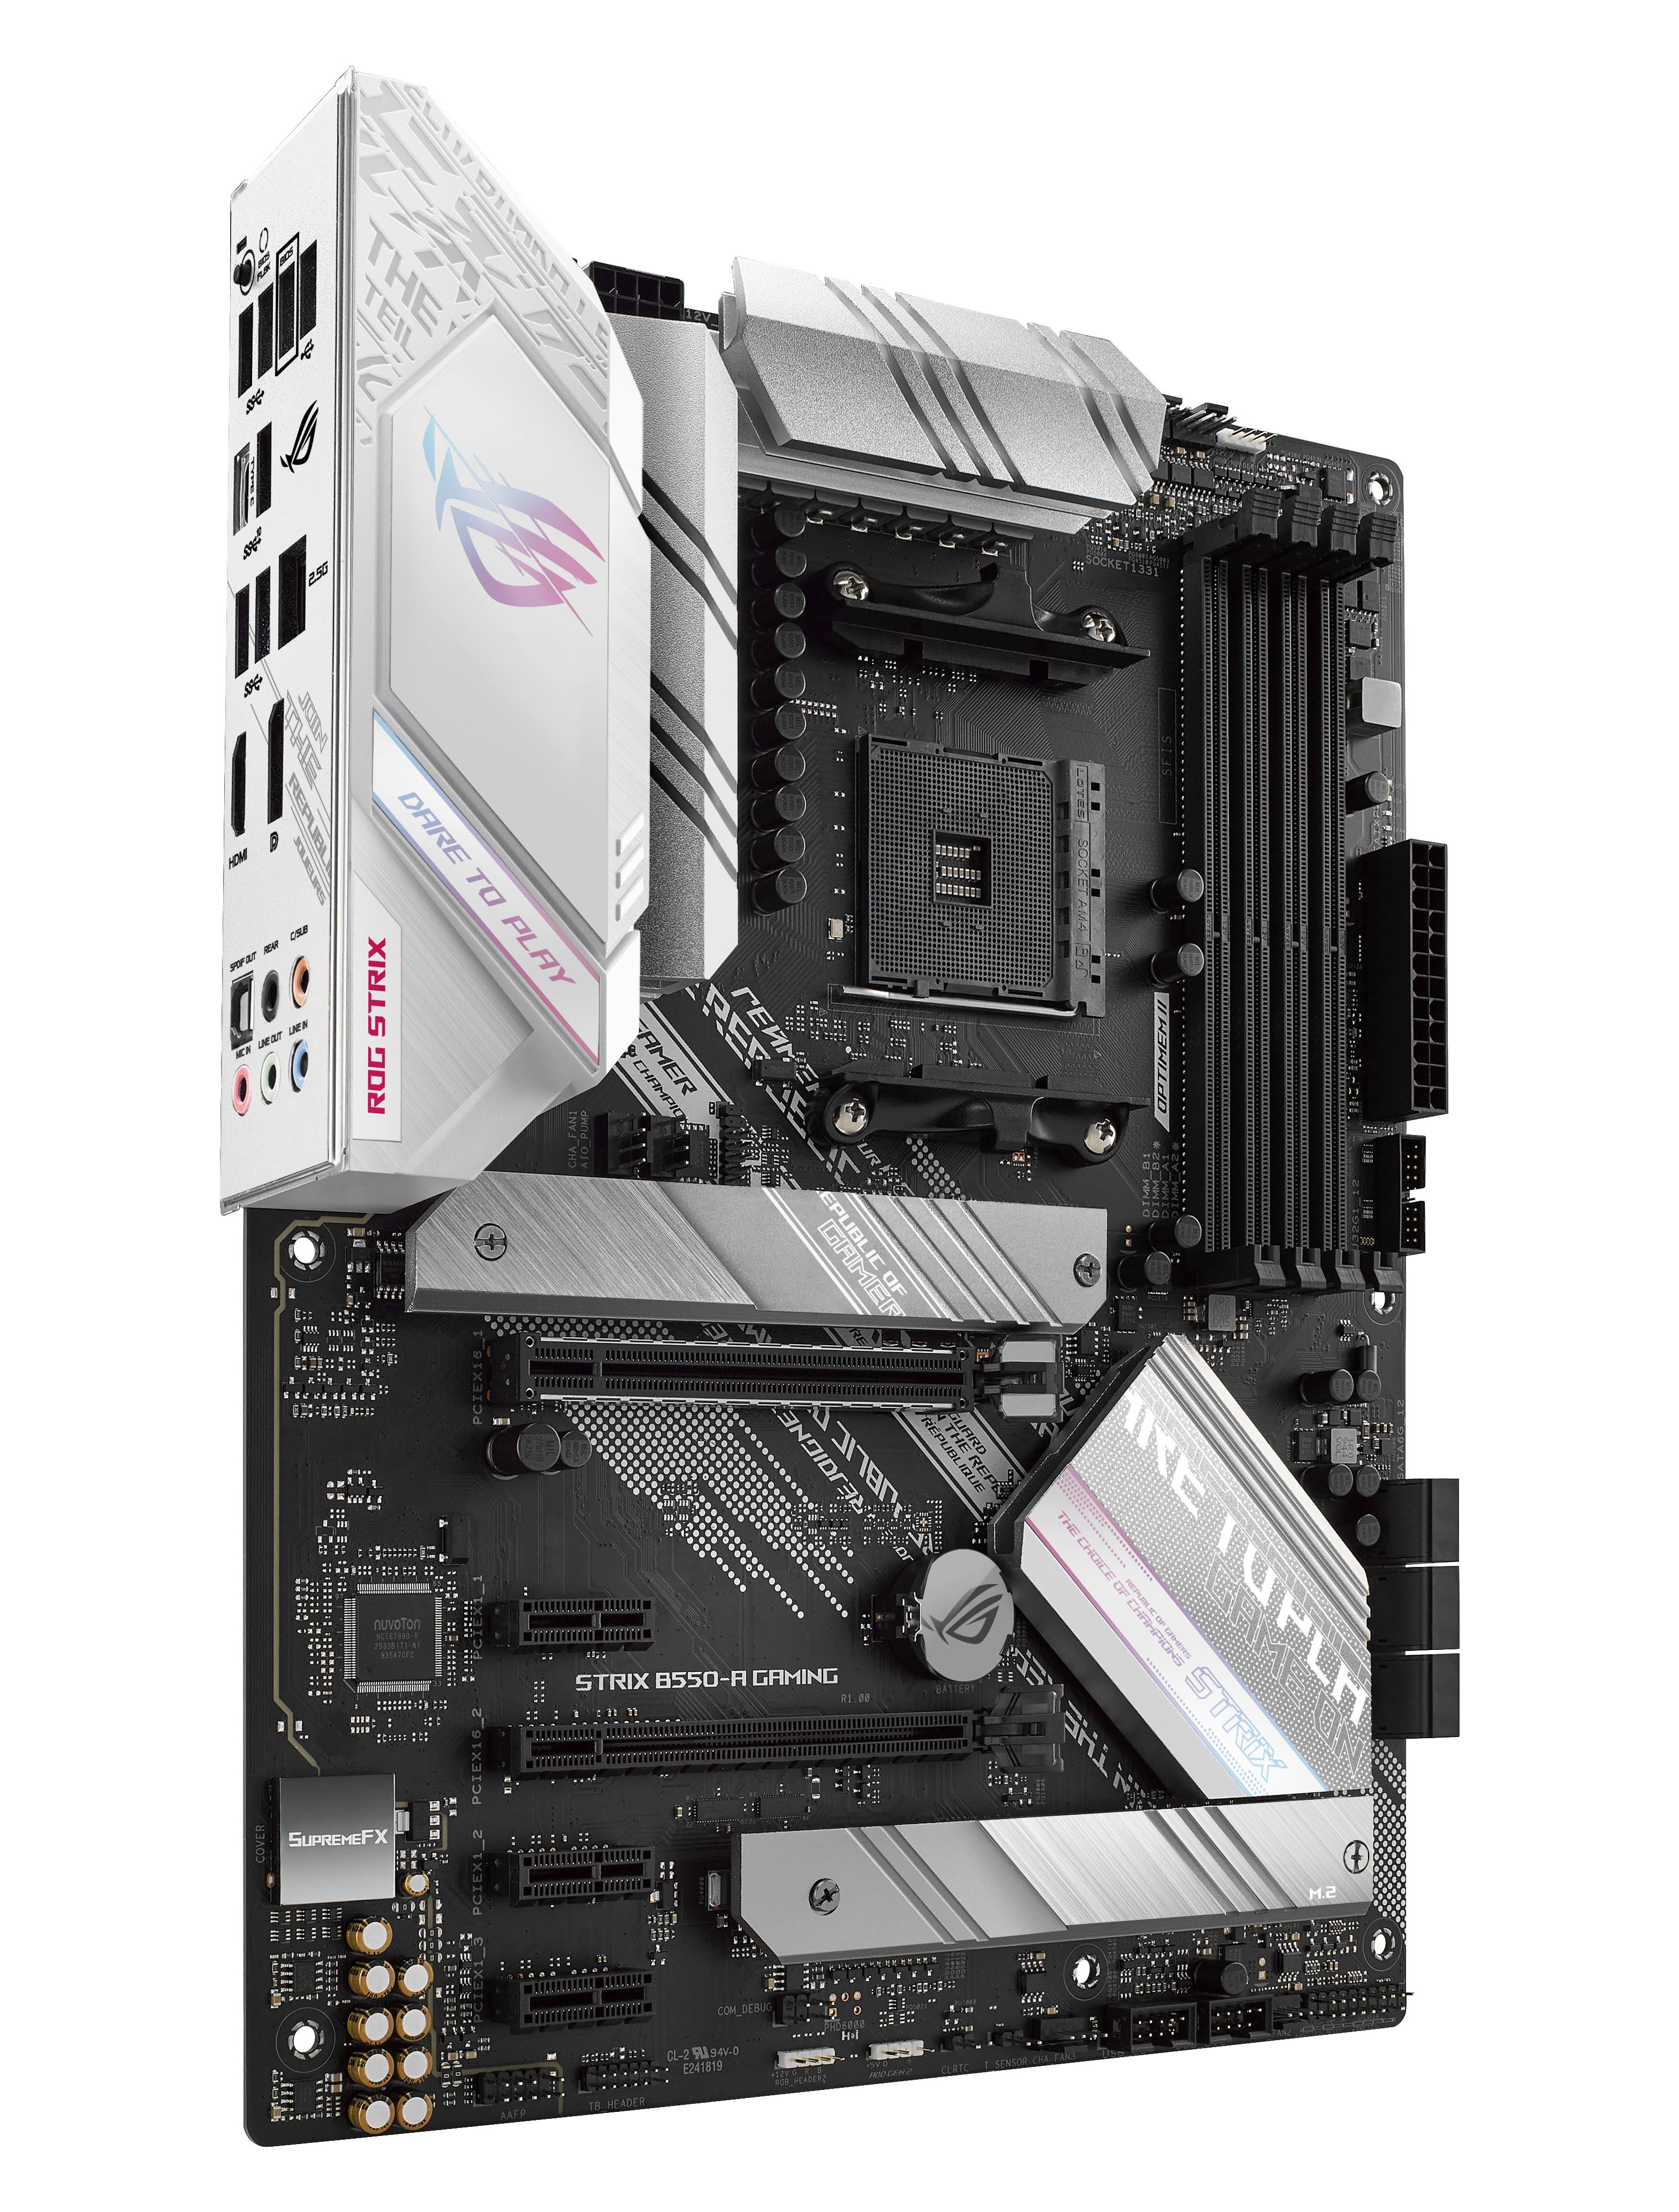 AMD AM4 Socket 3rd Gen AMD Ryzen; 4 x DIMM; Max. 128GB; DDR4; 1 x PCIe 4.0 x16 + 1 x PCIe 3.0 x16;3 x PCIe 3.0 x1; 1 x M.2 Socke